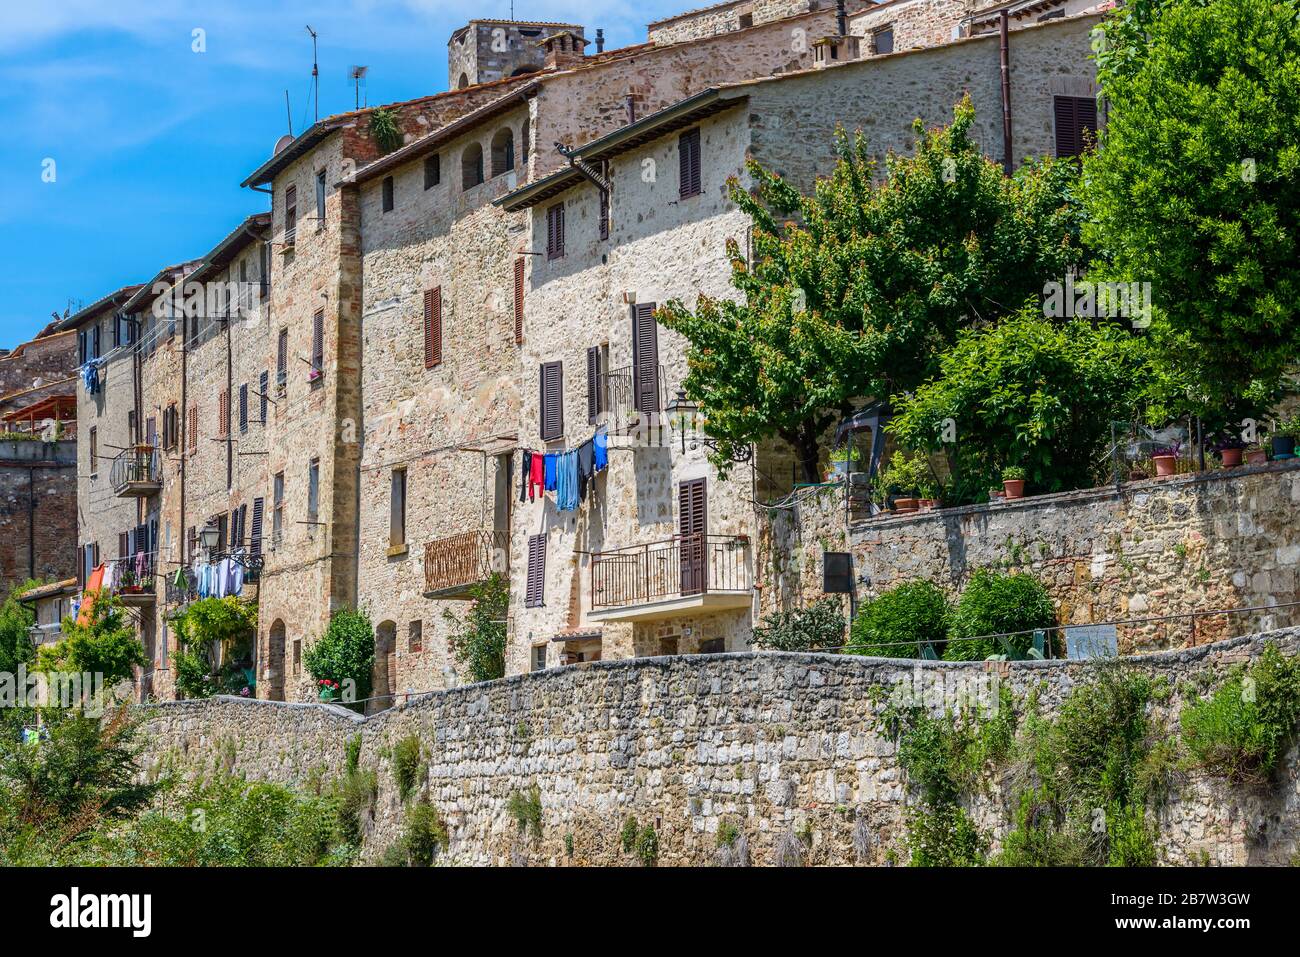 Colle di Val d'Elsa, Toskana / Italien: Charakteristische Häuser der malerischen, dicht bebauten historischen Oberstadt Colle Alta, im Juni. Stockfoto